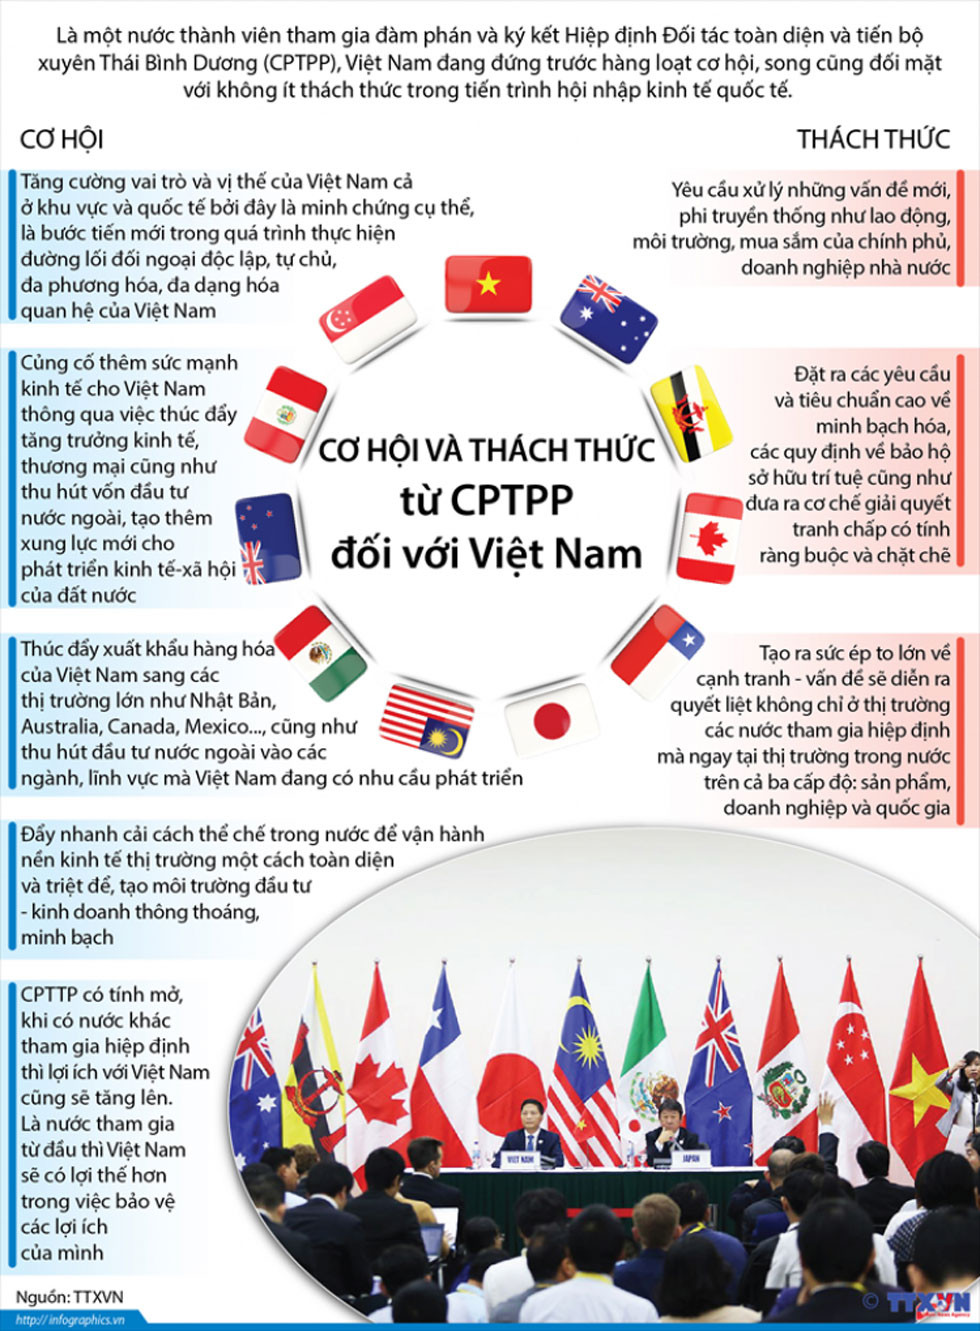 Cơ hội và thách thức từ CPTPP đối với Việt Nam